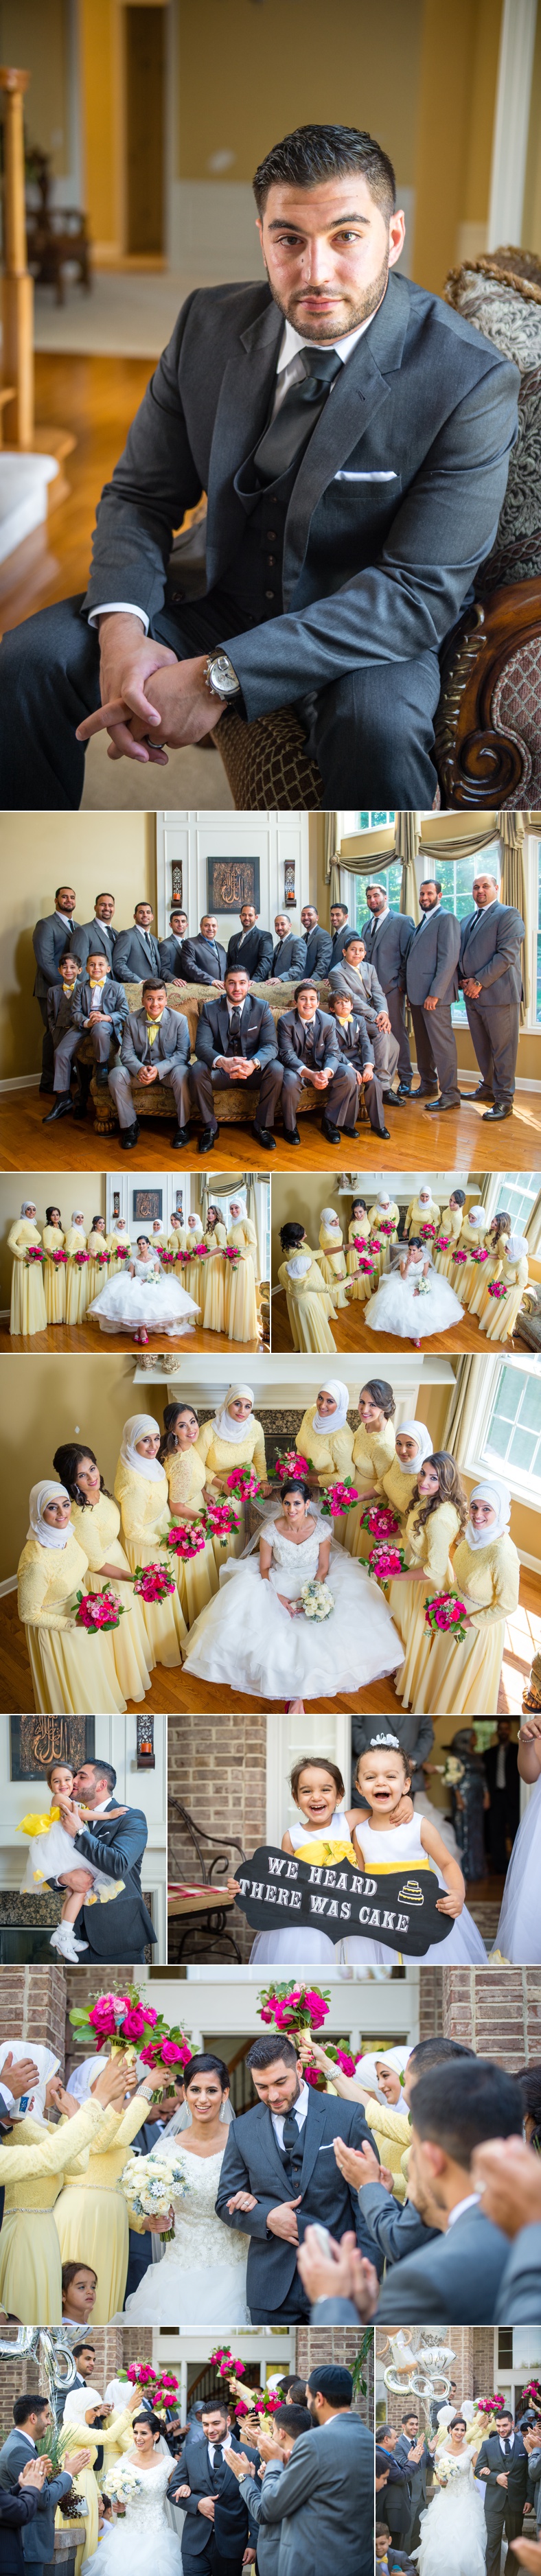 Arabic wedding Dearborn 